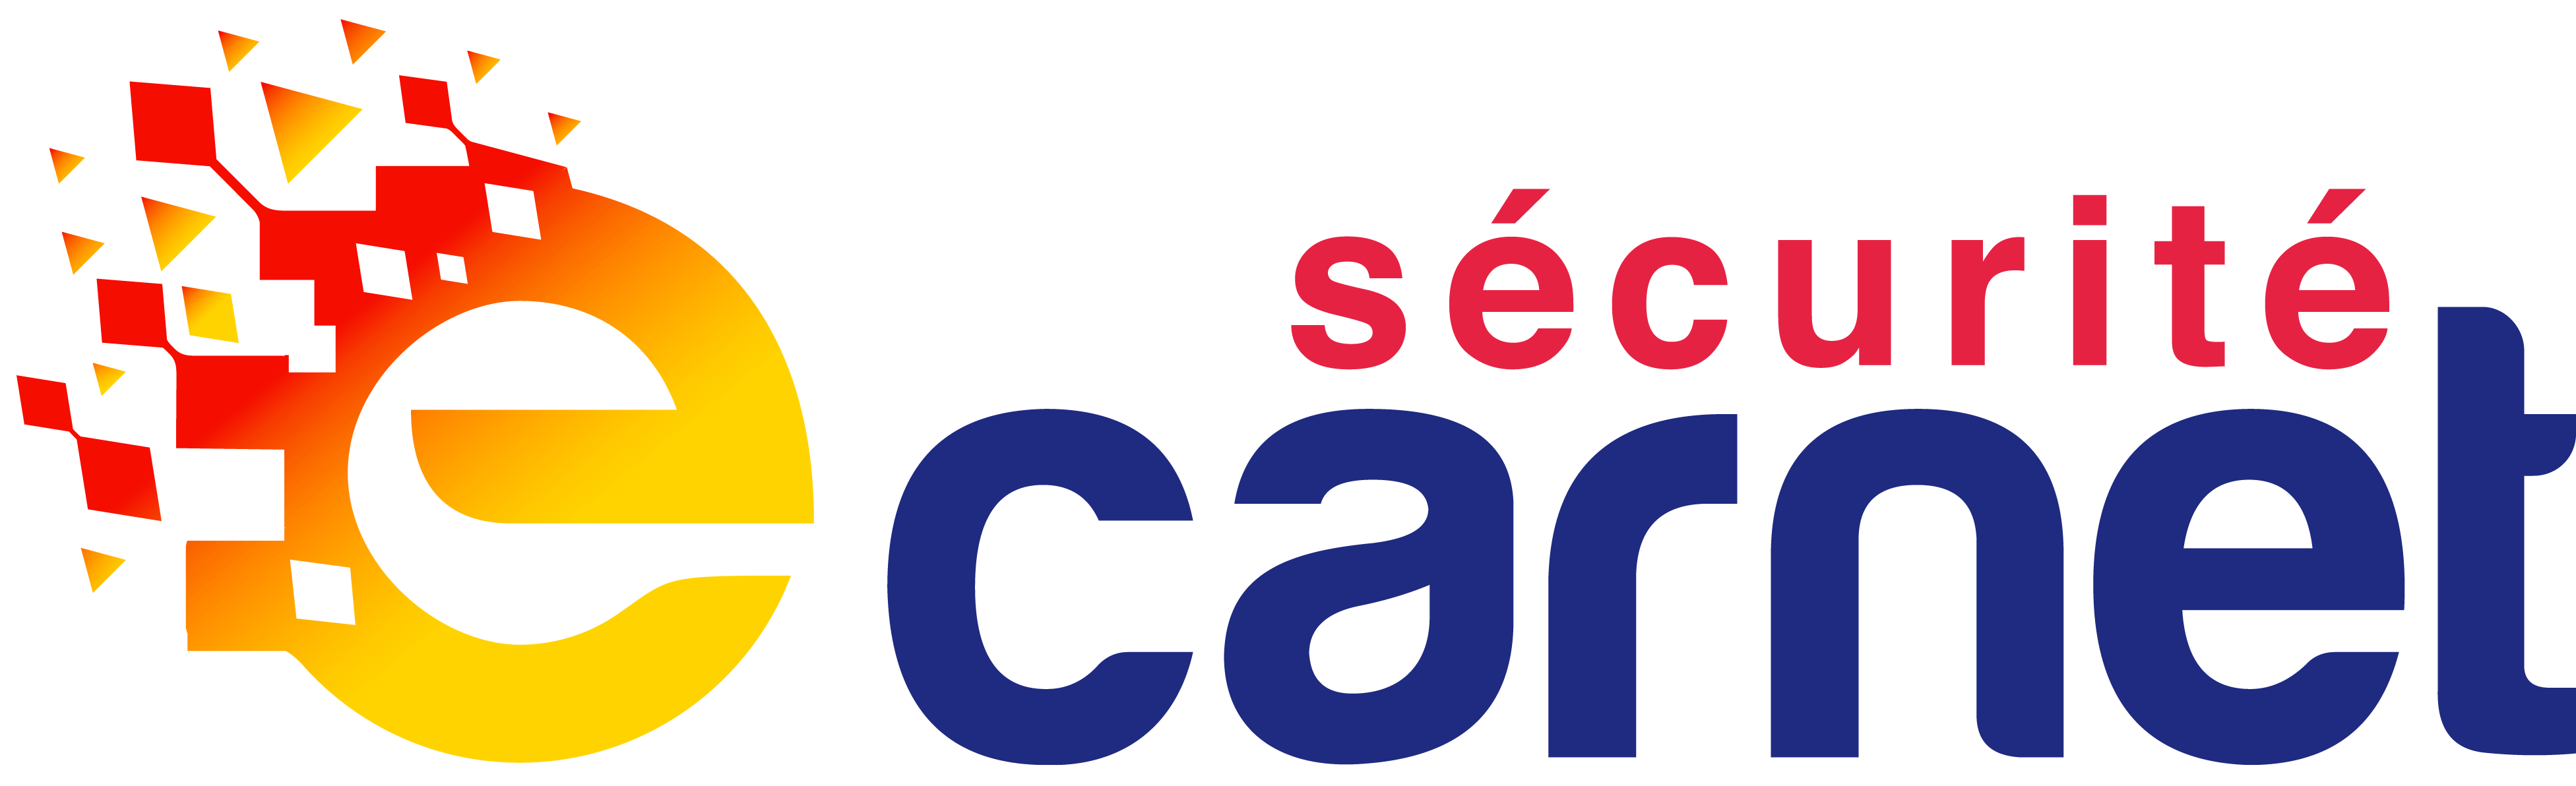 logo-e-carnet-securite-2018-V1